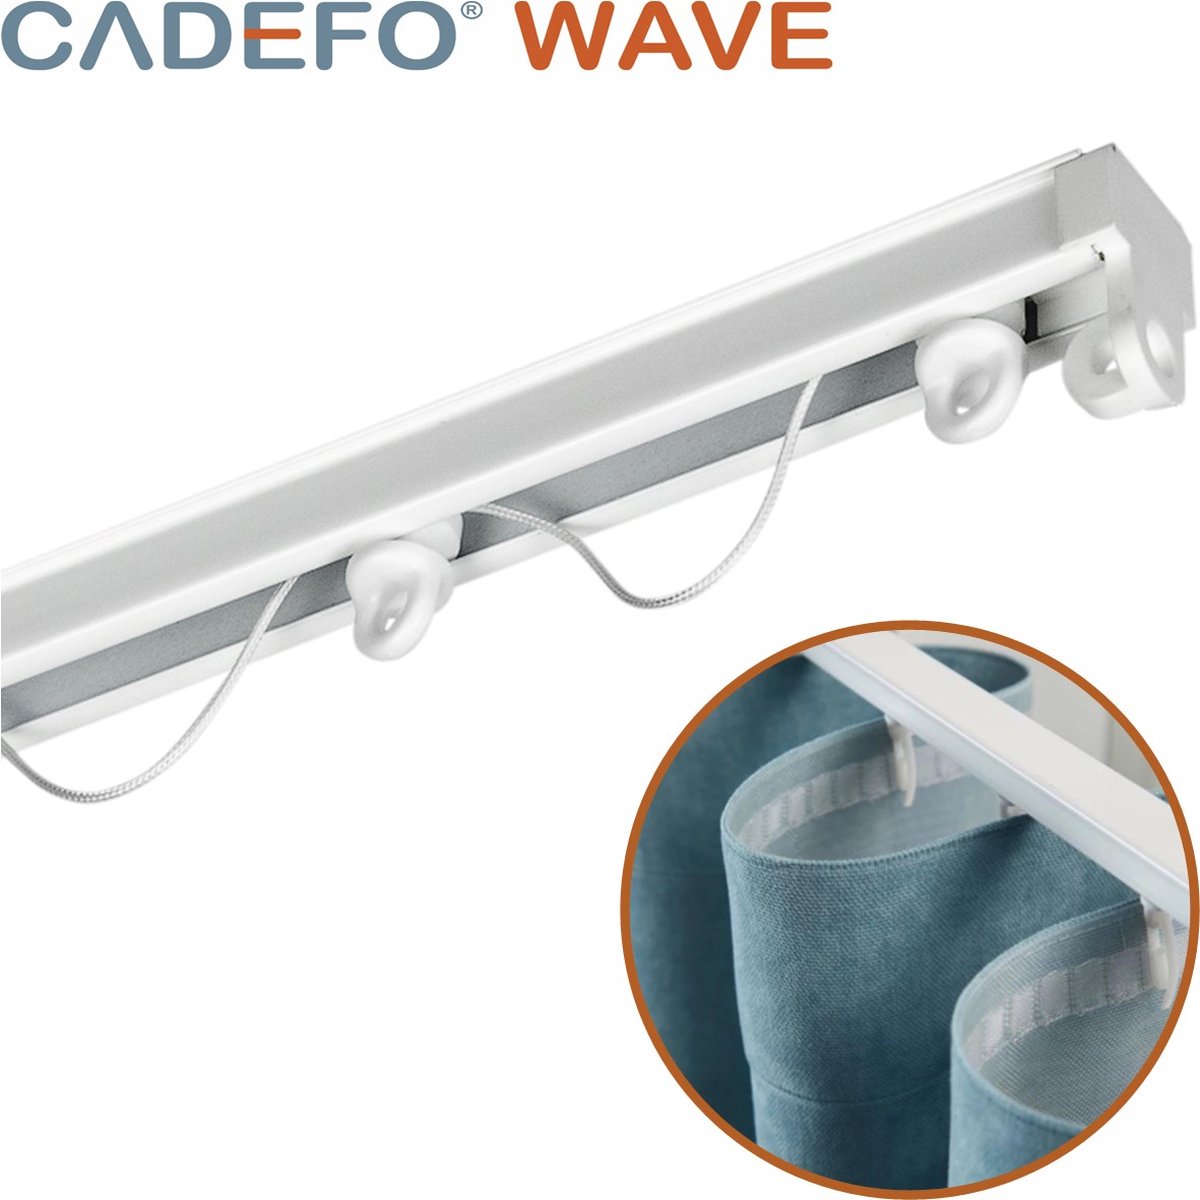 CADEFO WAVE (401 - 450 cm) Gordijnrails - Compleet op maat! - UIT 1 STUK - Leverbaar tot 6 meter - Plafondbevestiging - Lengte 427 cm